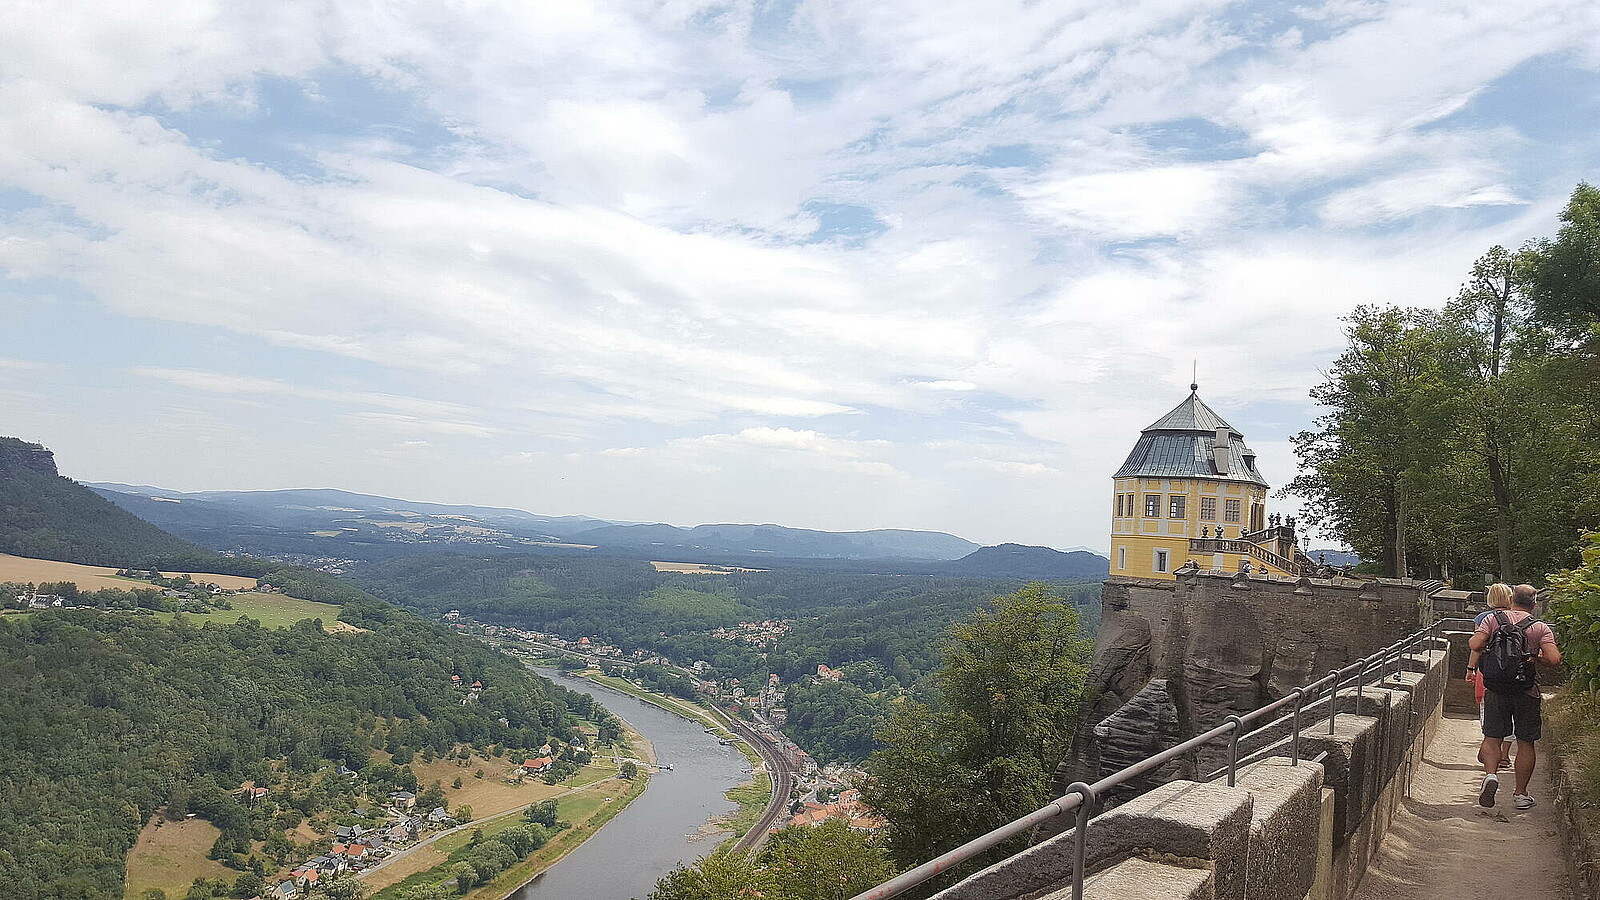 Erleben Sie einen spannenden und informativen Ausflug auf Festung Königstein - der größten offenen Bergfestung Europas und mit spektakulärem Rundumblick ins Elbtal und auf die Sächsische Schweiz. Auch wenn Sie einen außergewöhnlichen Ort für Ihr Candle light Dinner oder Ihre Hochzeit suchen, ist die Friedrichsburg auf Festung Königstein eine Überlegung und Ausflug wert.